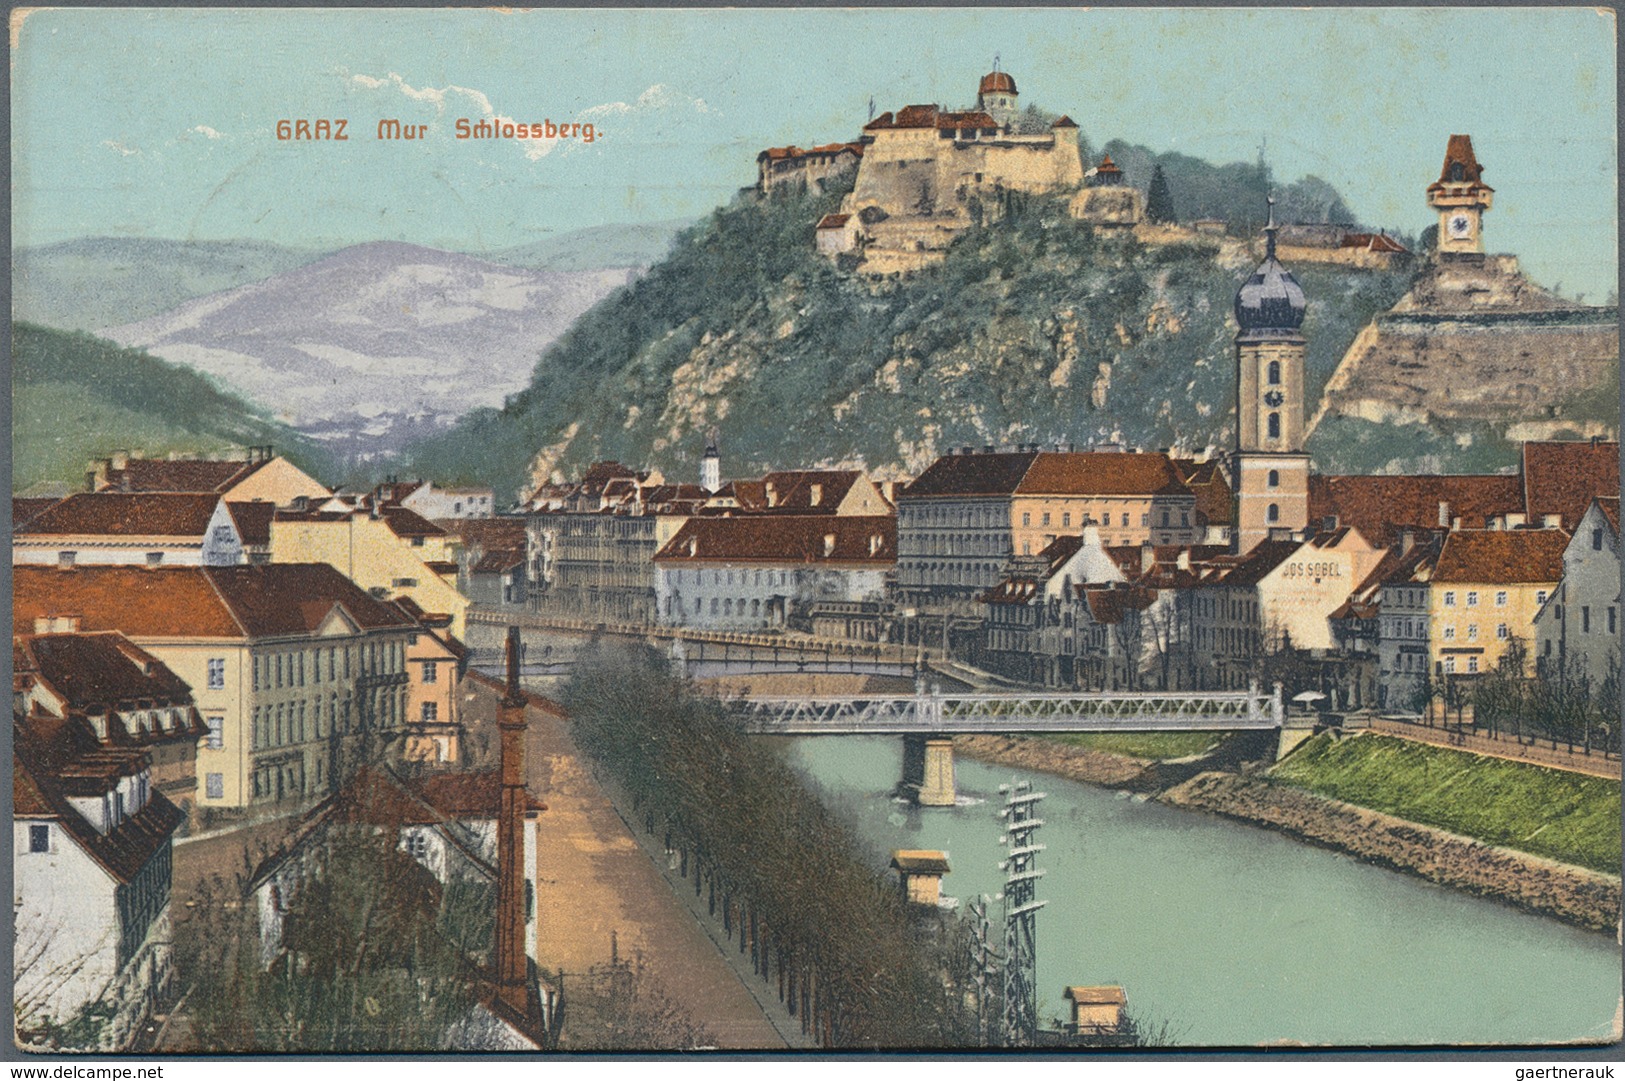 21663 Ansichtskarten: Österreich: 1905/1921 ca., SPENDENMARKEN auf Ansichtskarten: aussergewöhnliches Konv